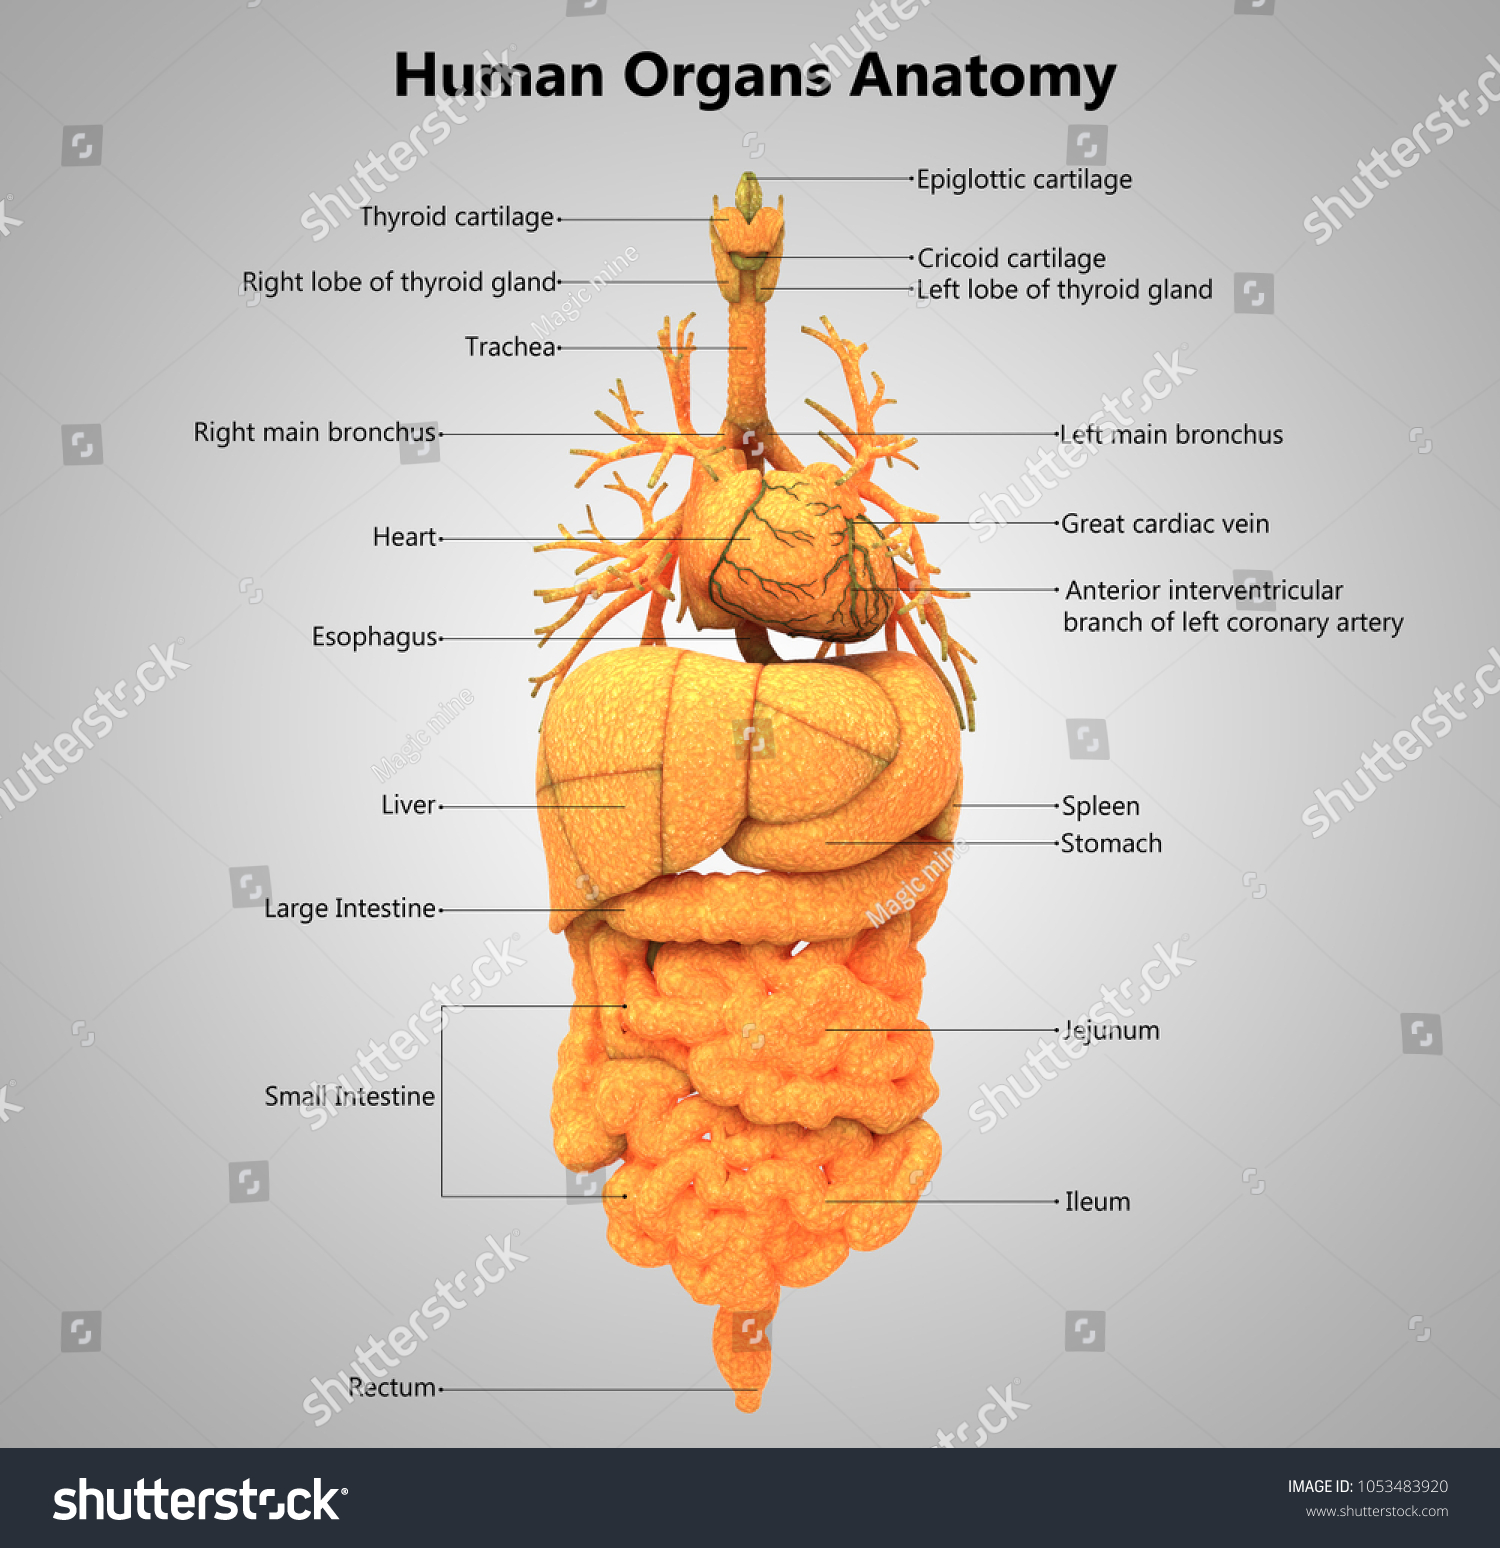 35 Label The Organs - Labels Design Ideas 2020